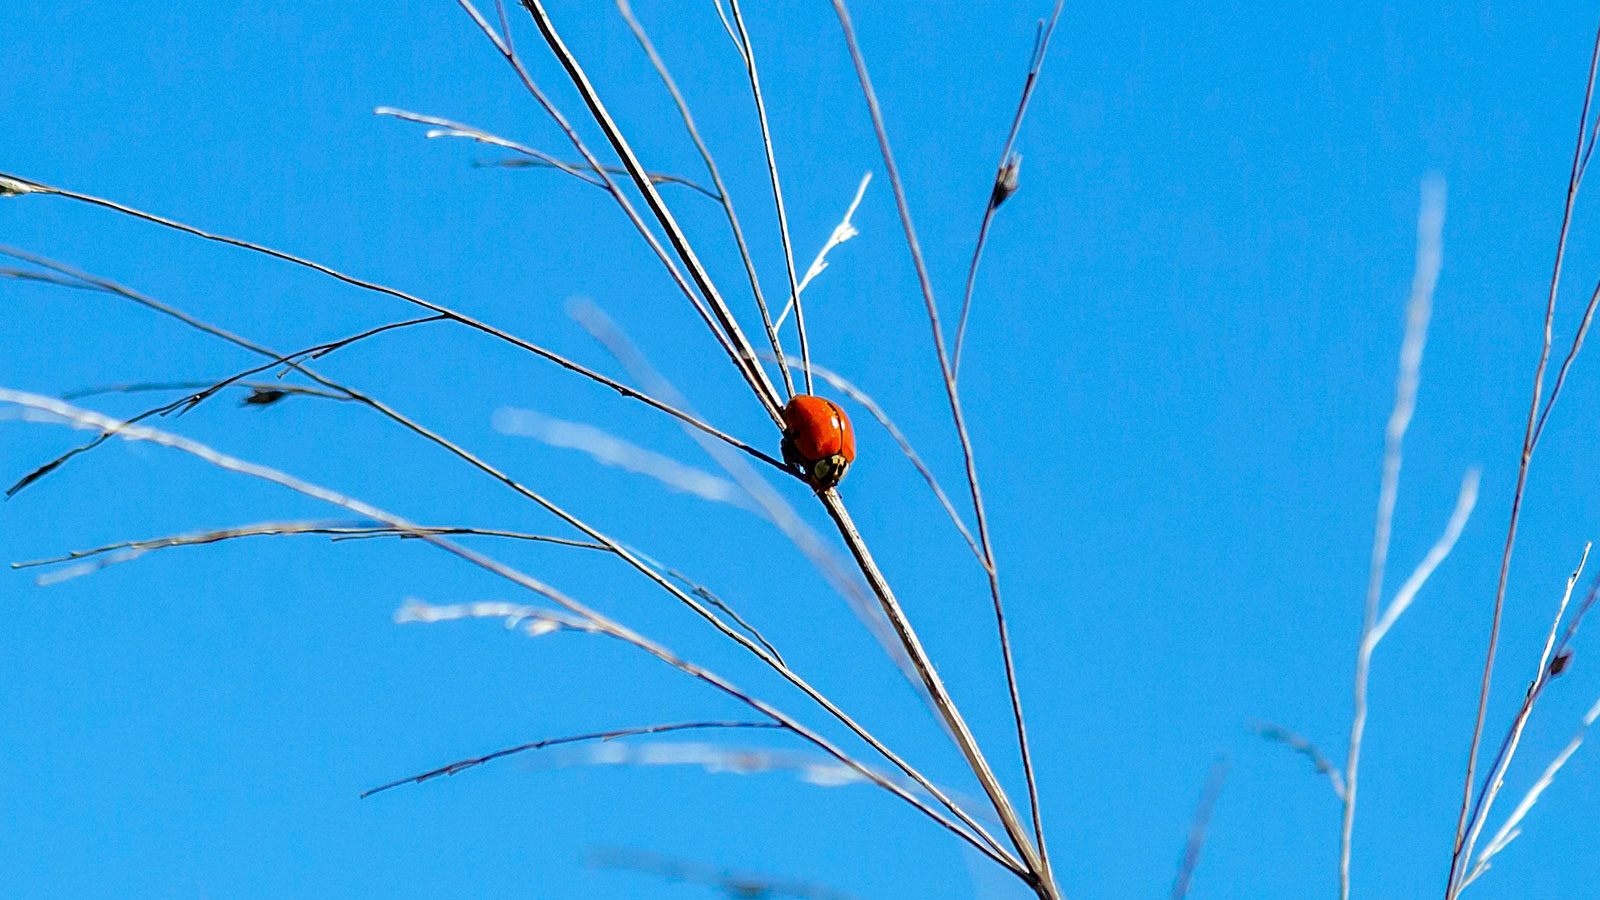 Polished lady beetle on a plant against a blue sky